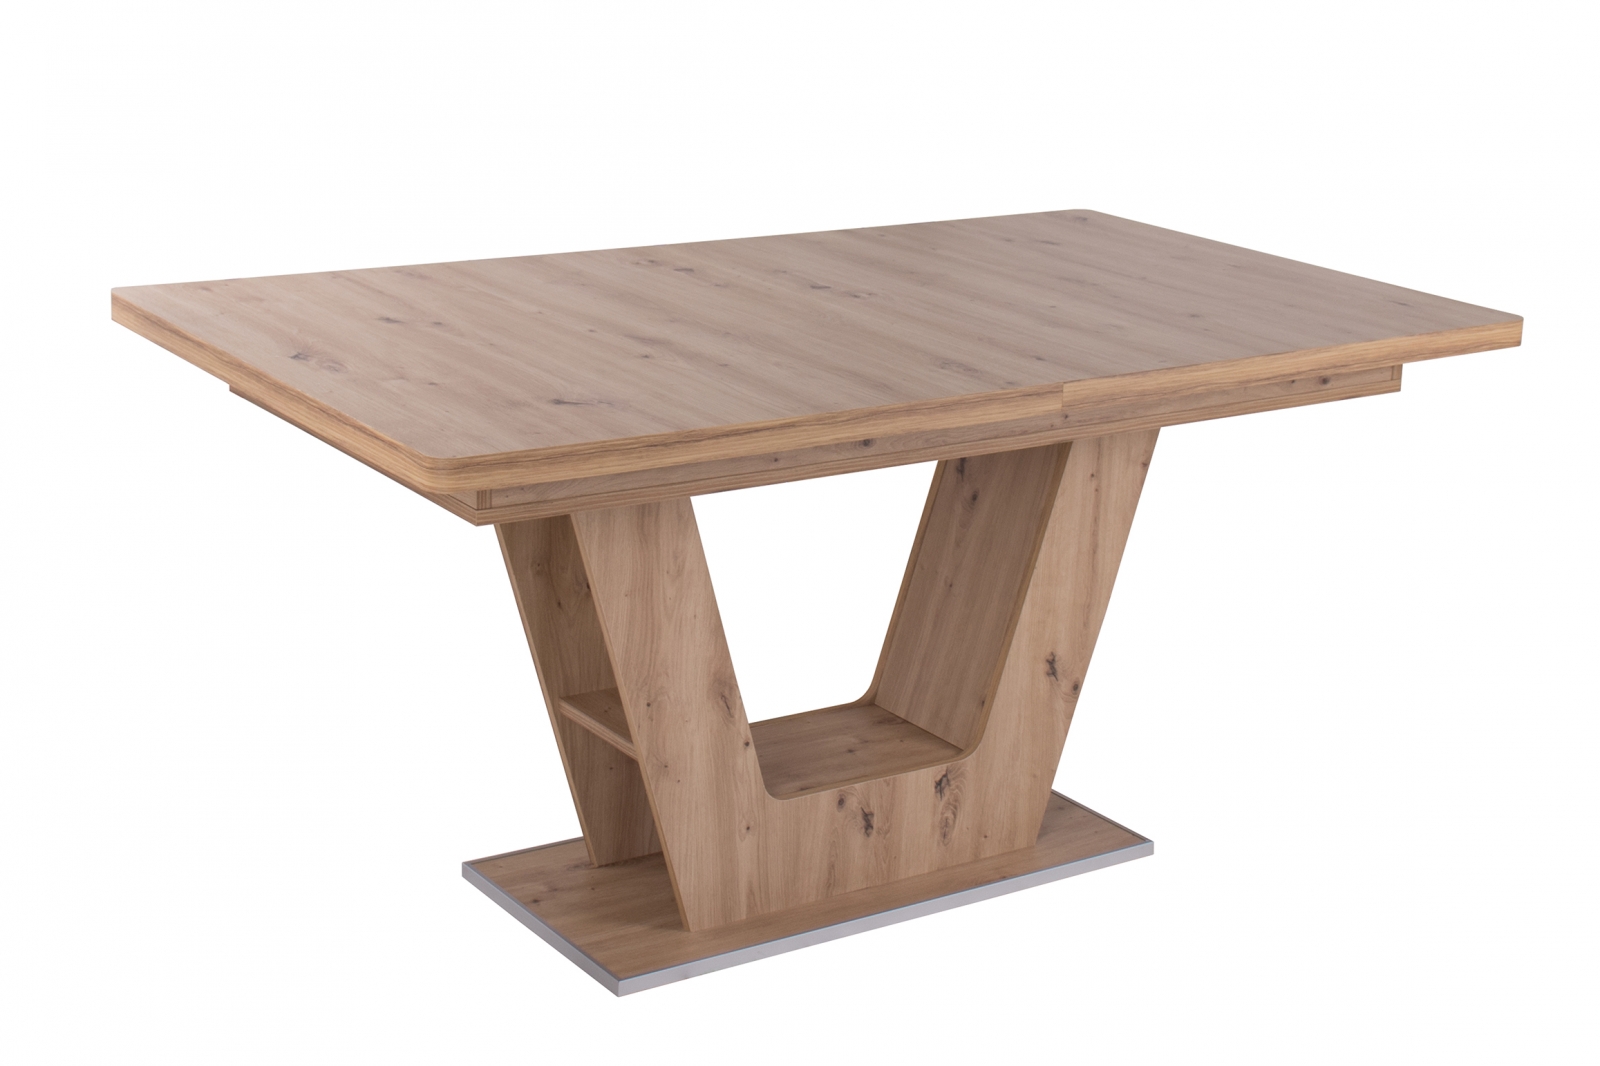 Apróhirdetés, PRÁGA asztal (160cm x 90cm + 40cm)